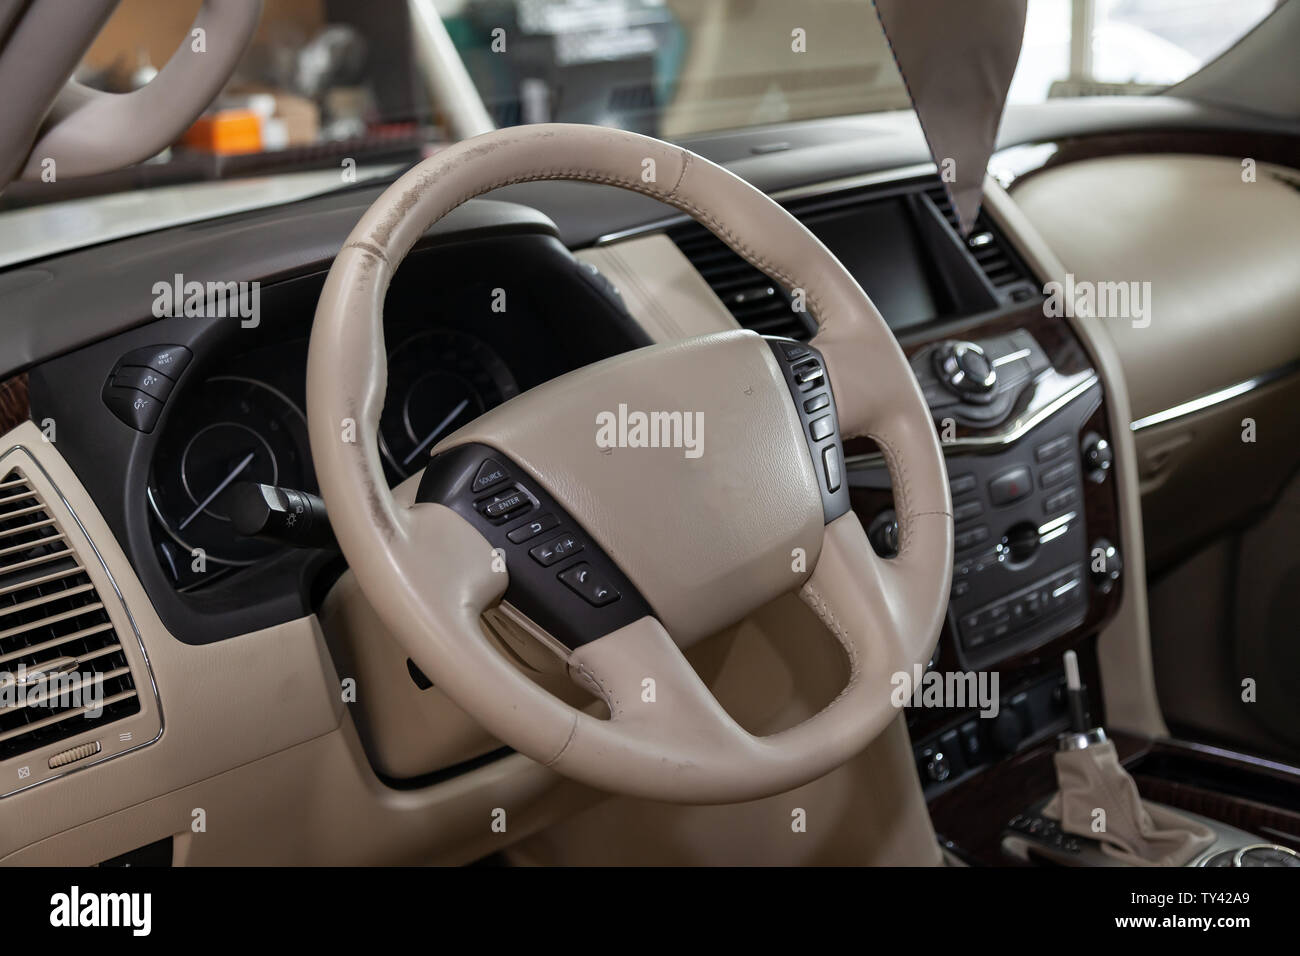 Mercedes Benz W212 - Jahr 2013, Avantgarde-Ausstattung, beigefarbenes Leder  Luxus-Interieur - E-Klasse 250 CDI, Sonderanfertigungen - von Mitarbeitern  hergestelltes Auto Stockfotografie - Alamy